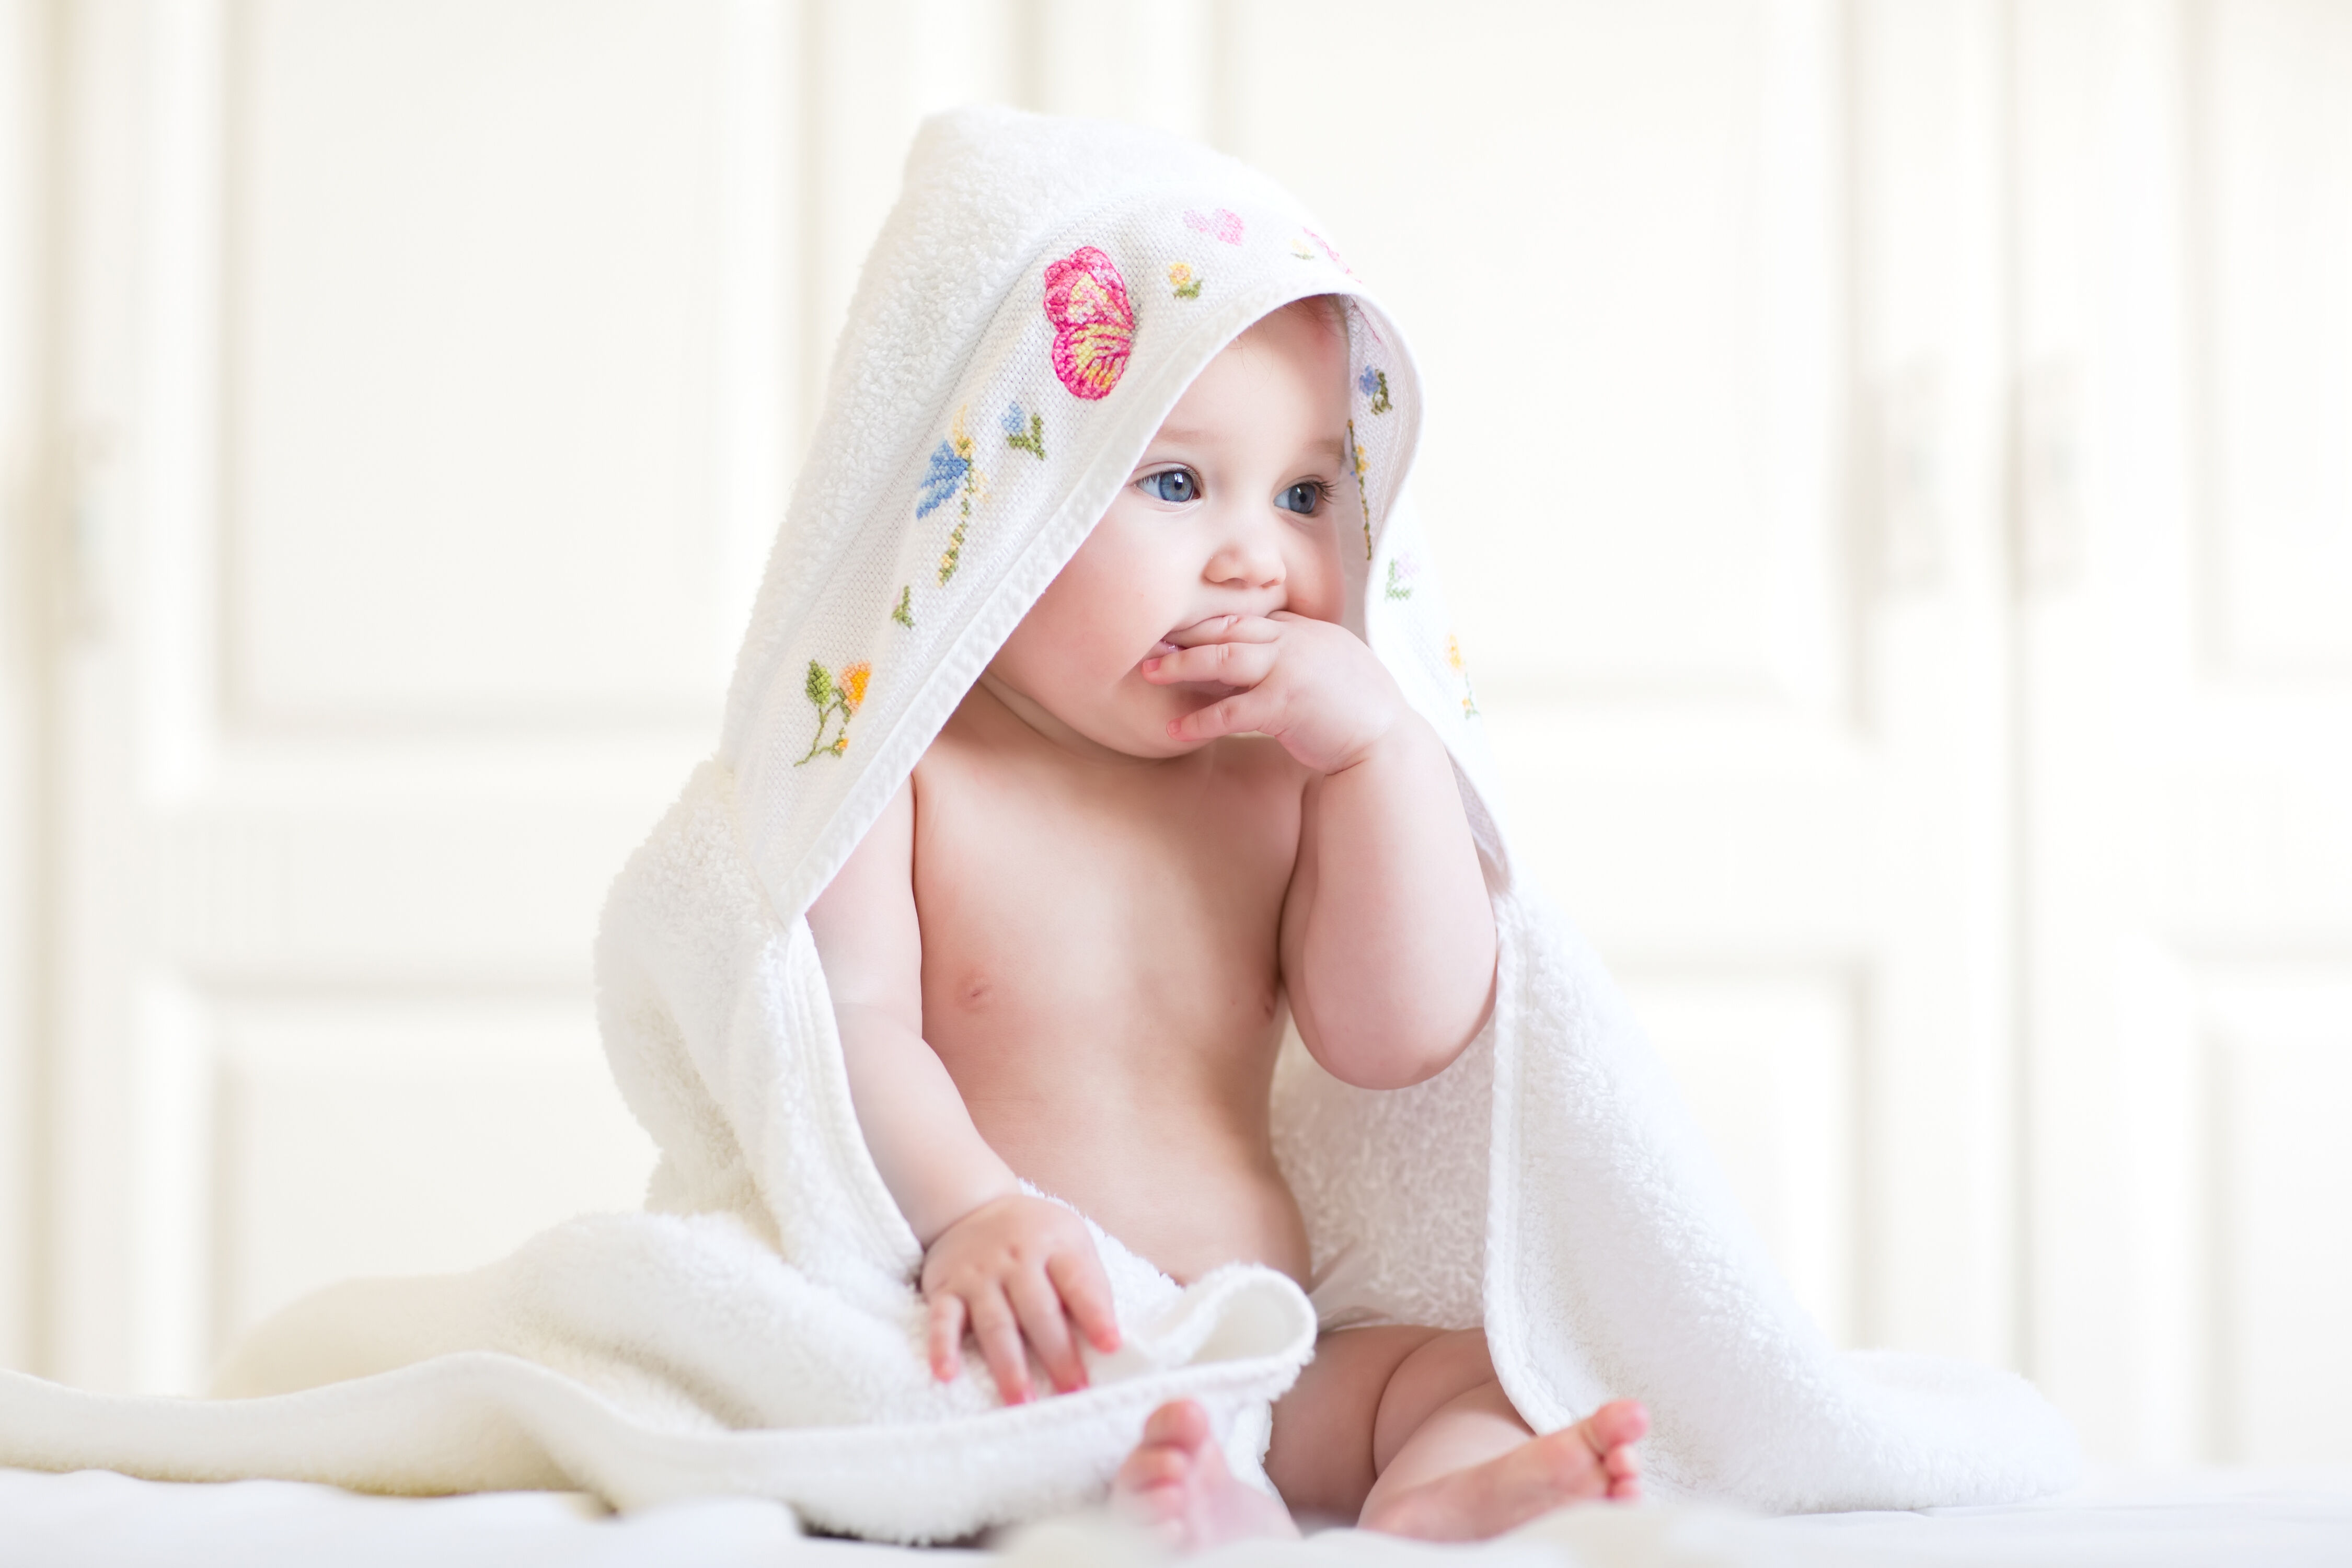 Cách nhận biết được mụn sữa/mụn kê ở trẻ sơ sinh?
